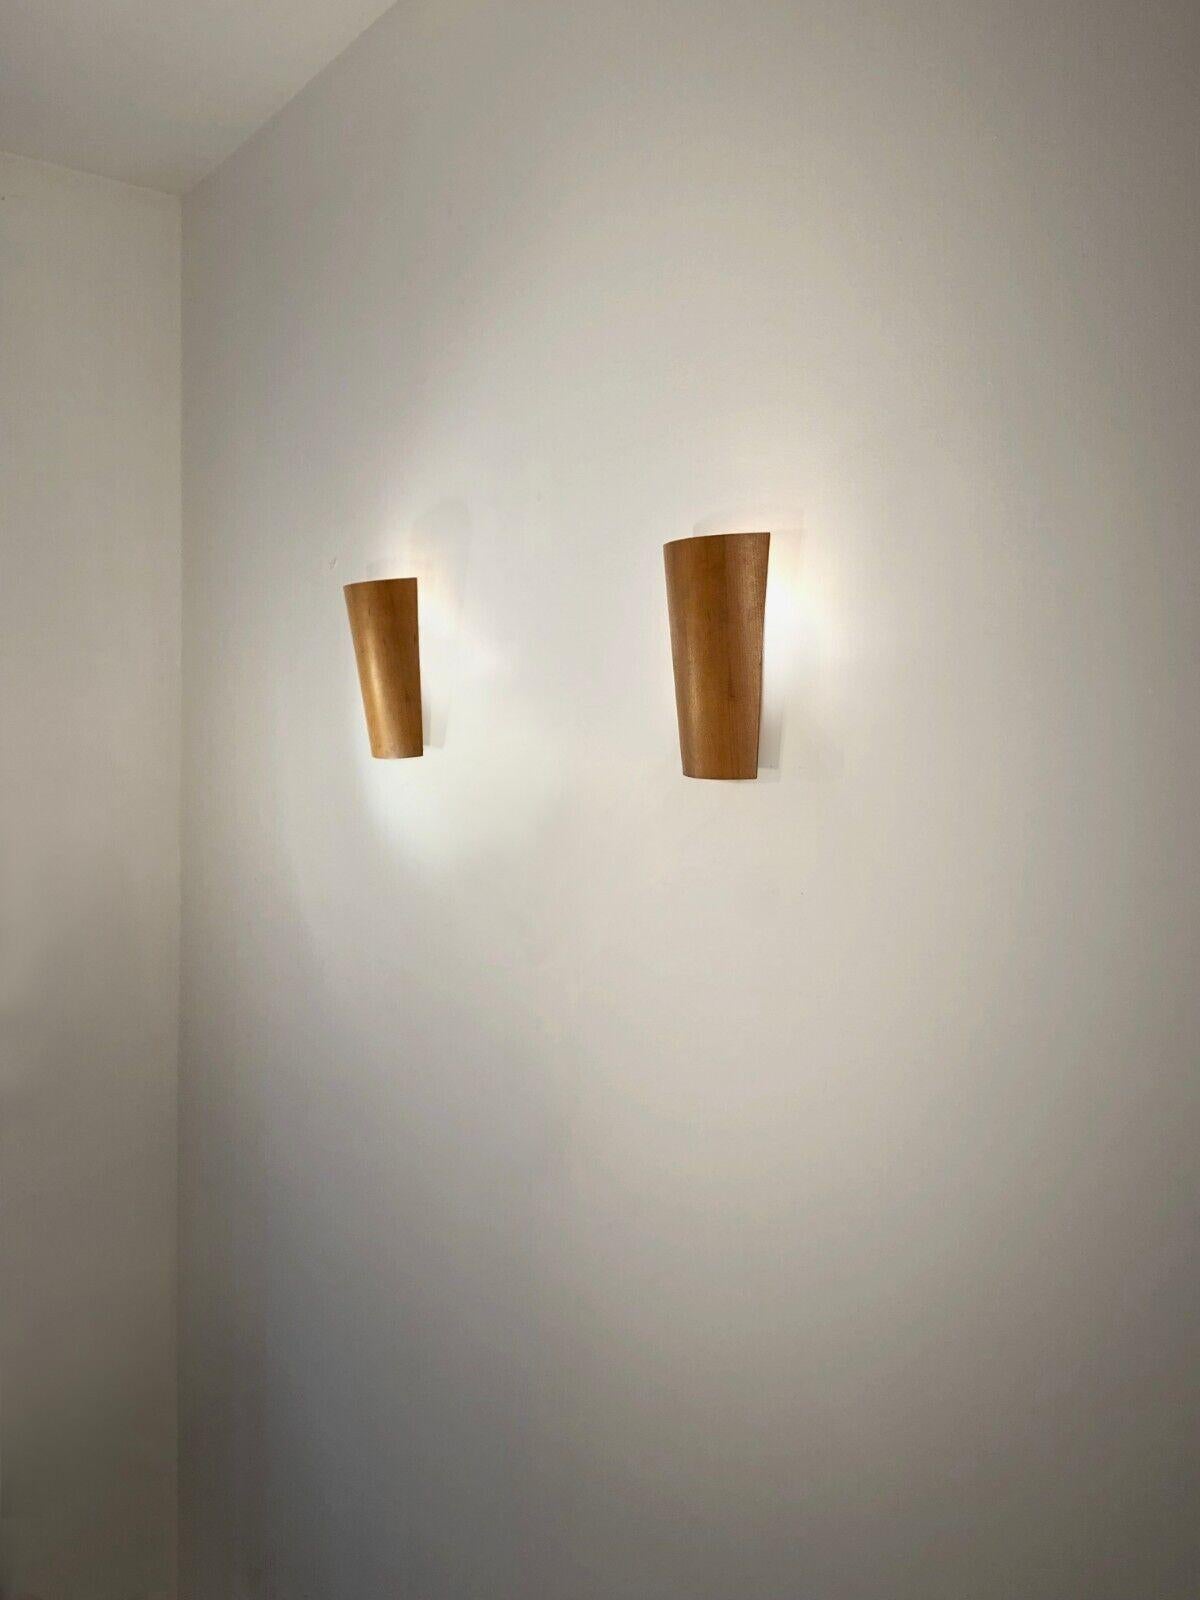 Ein elegantes und einfaches, postmodernes und minimalistisches Paar warmer Wandleuchten, Postmodernismus, Minimalismus, Konstruktivismus, Neunziger Jahre, bestehend aus 2 gebogenen, hellen Holzlamellen, die das Licht zur Wand hin streuen, montiert